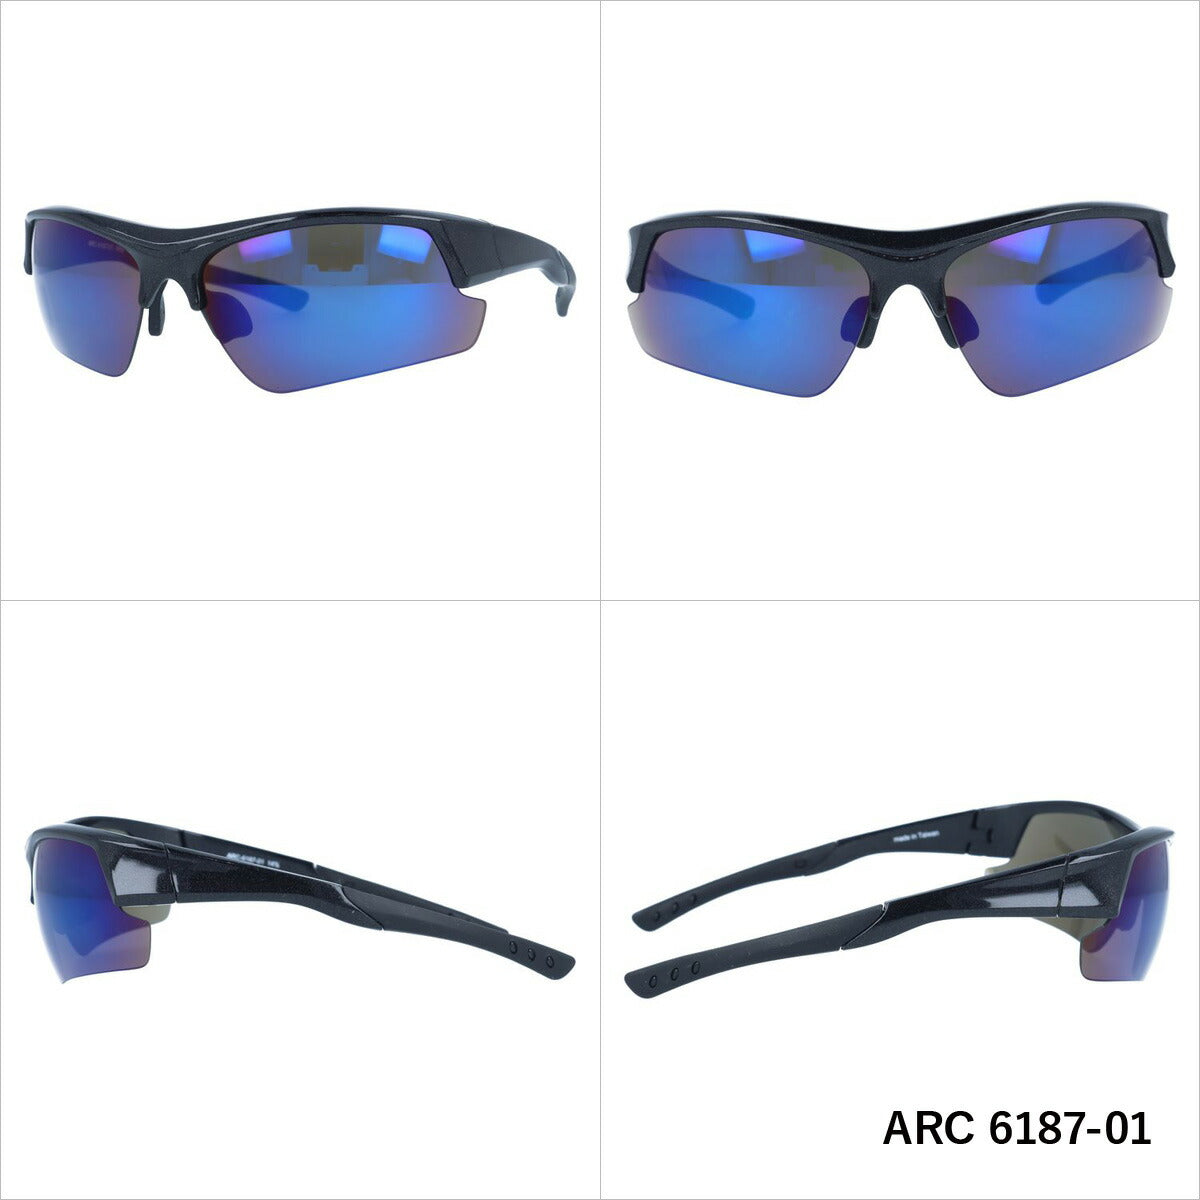 アークスタイル サングラス ミラーレンズ アジアンフィット ARC Style ARC 6187 全2カラー 67サイズ スポーツ メンズ レディース 紫外線対策 UVカット おしゃれ プレゼント ギフト